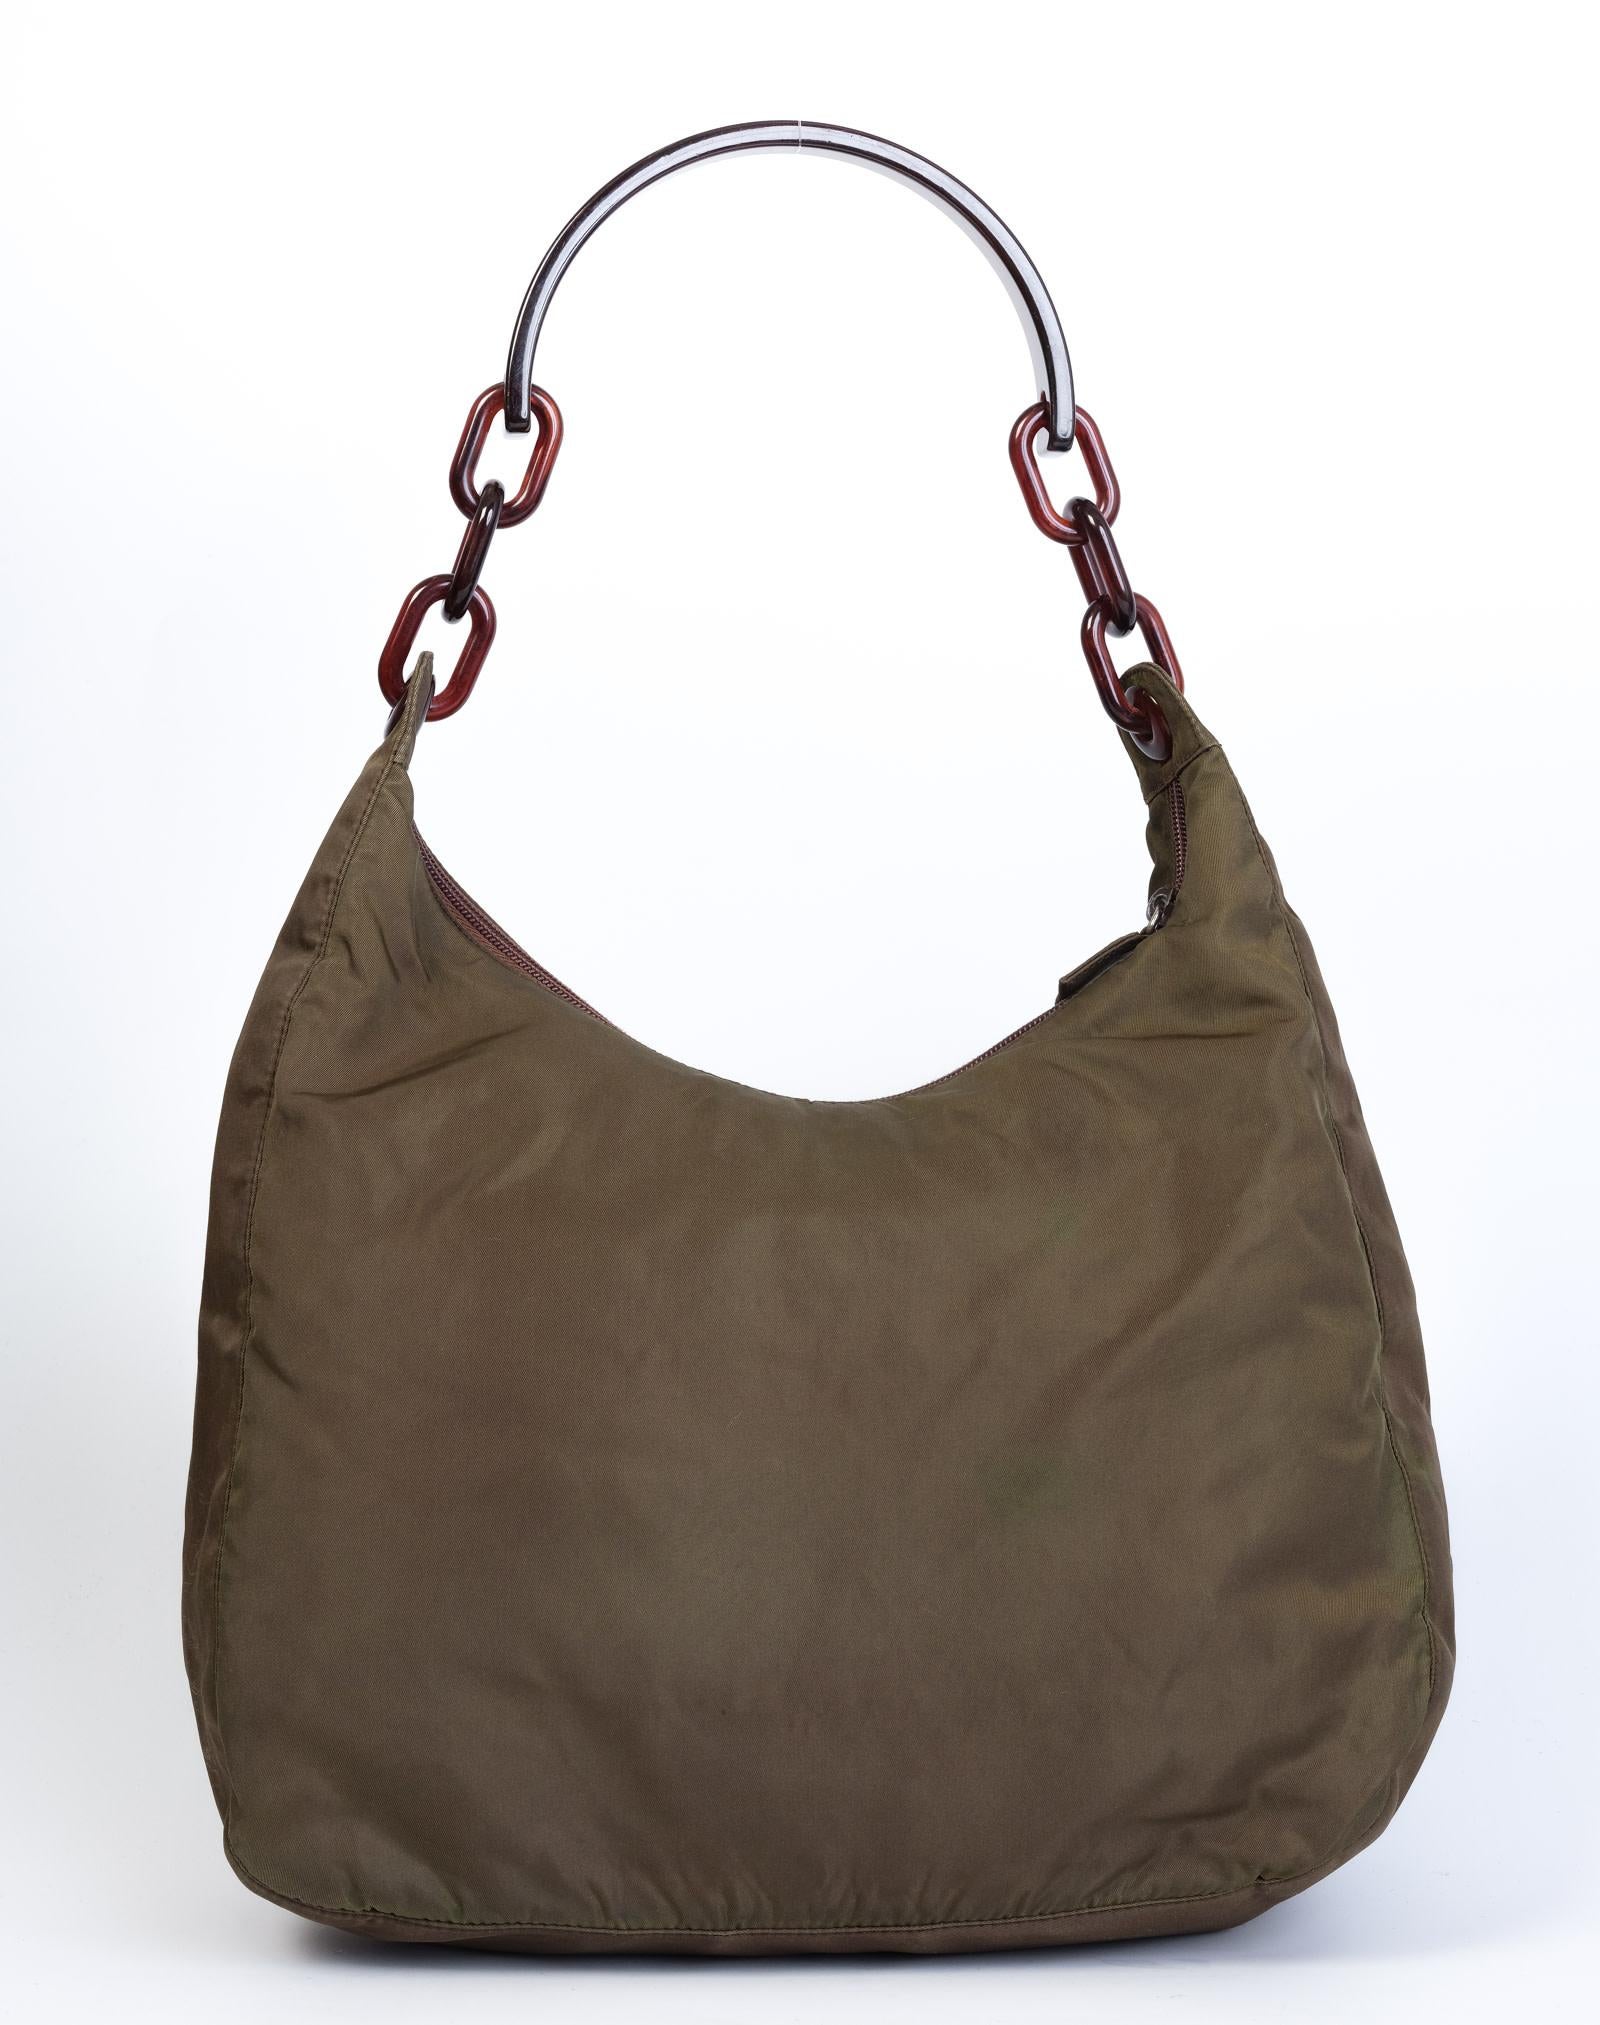 Ce sac est fabriqué en nylon kaki et comporte une poignée en chaîne en écaille de tortue, une fermeture à glissière sur le dessus et un compartiment principal avec des poches supplémentaires à glissière.

COULEUR : Vert
MATÉRIEL : Nylon
ITEM CODE :